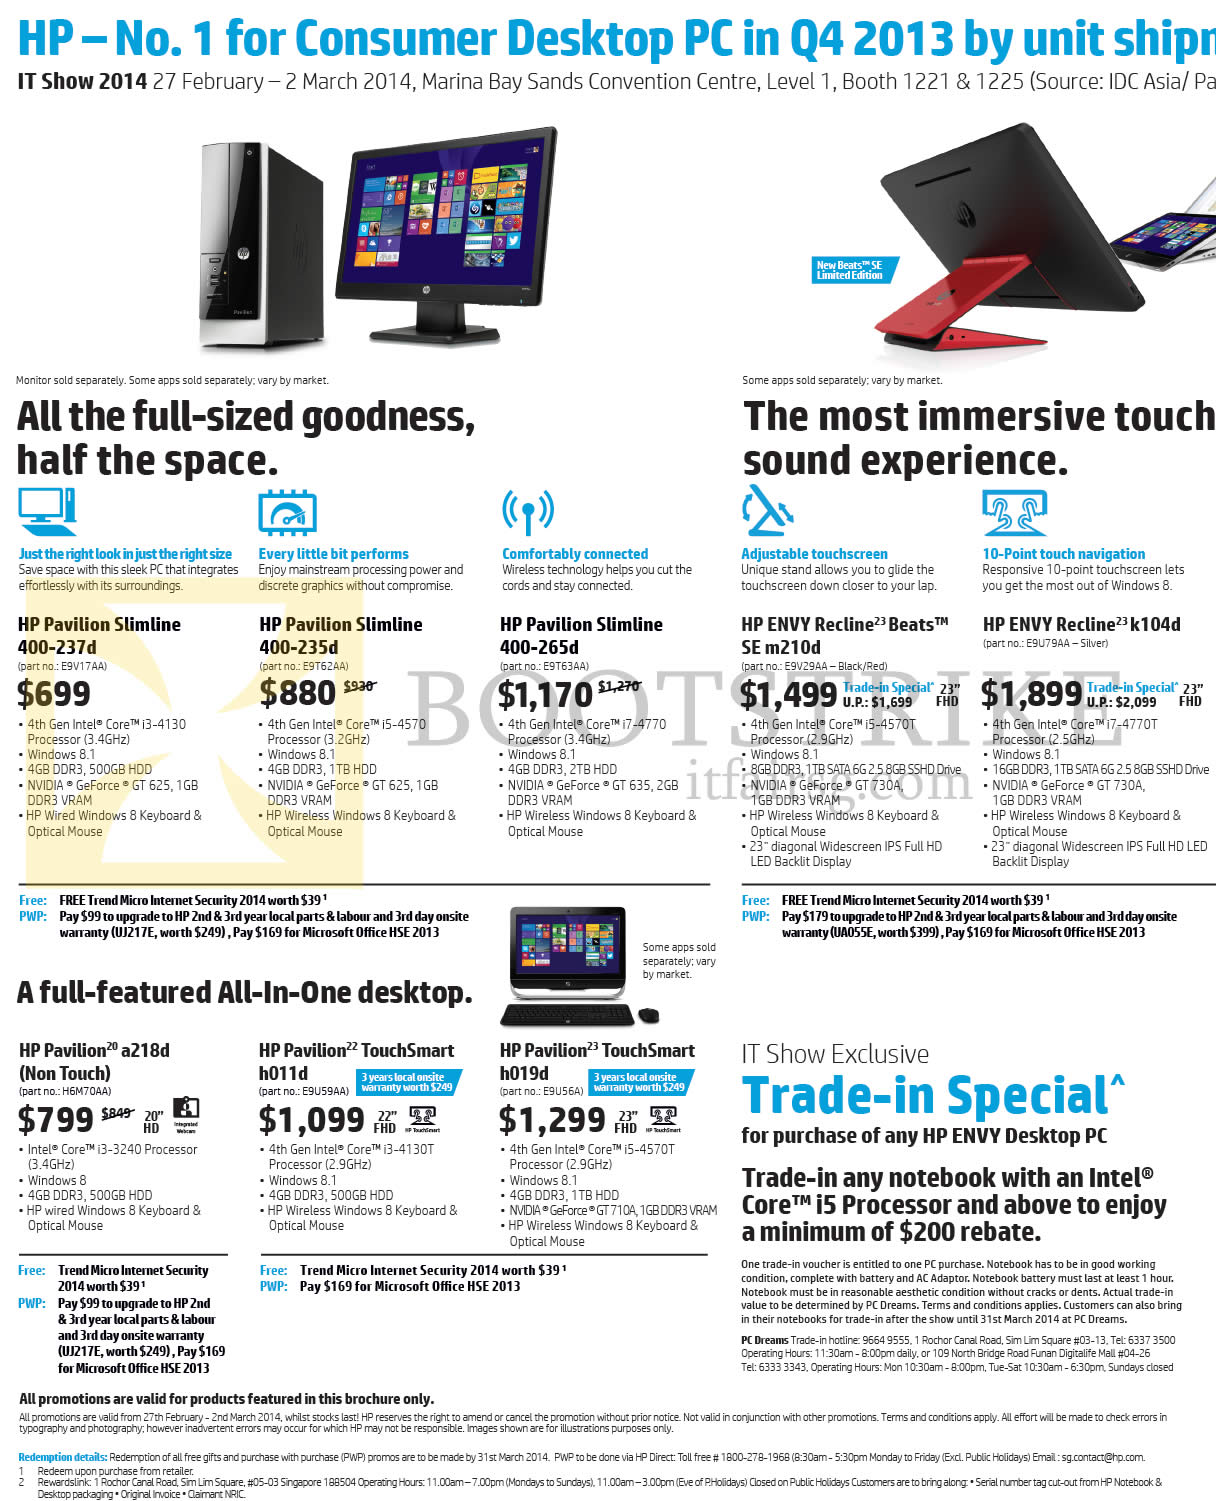 IT SHOW 2014 price list image brochure of HP Desktop PCs, Notebooks, AIO Desktop PCs Pavilion Slimline 400-237d, 235d, 265d, Envy Recline K104d, Beats SE M210d, Pavilion A218d, H011d, H019d